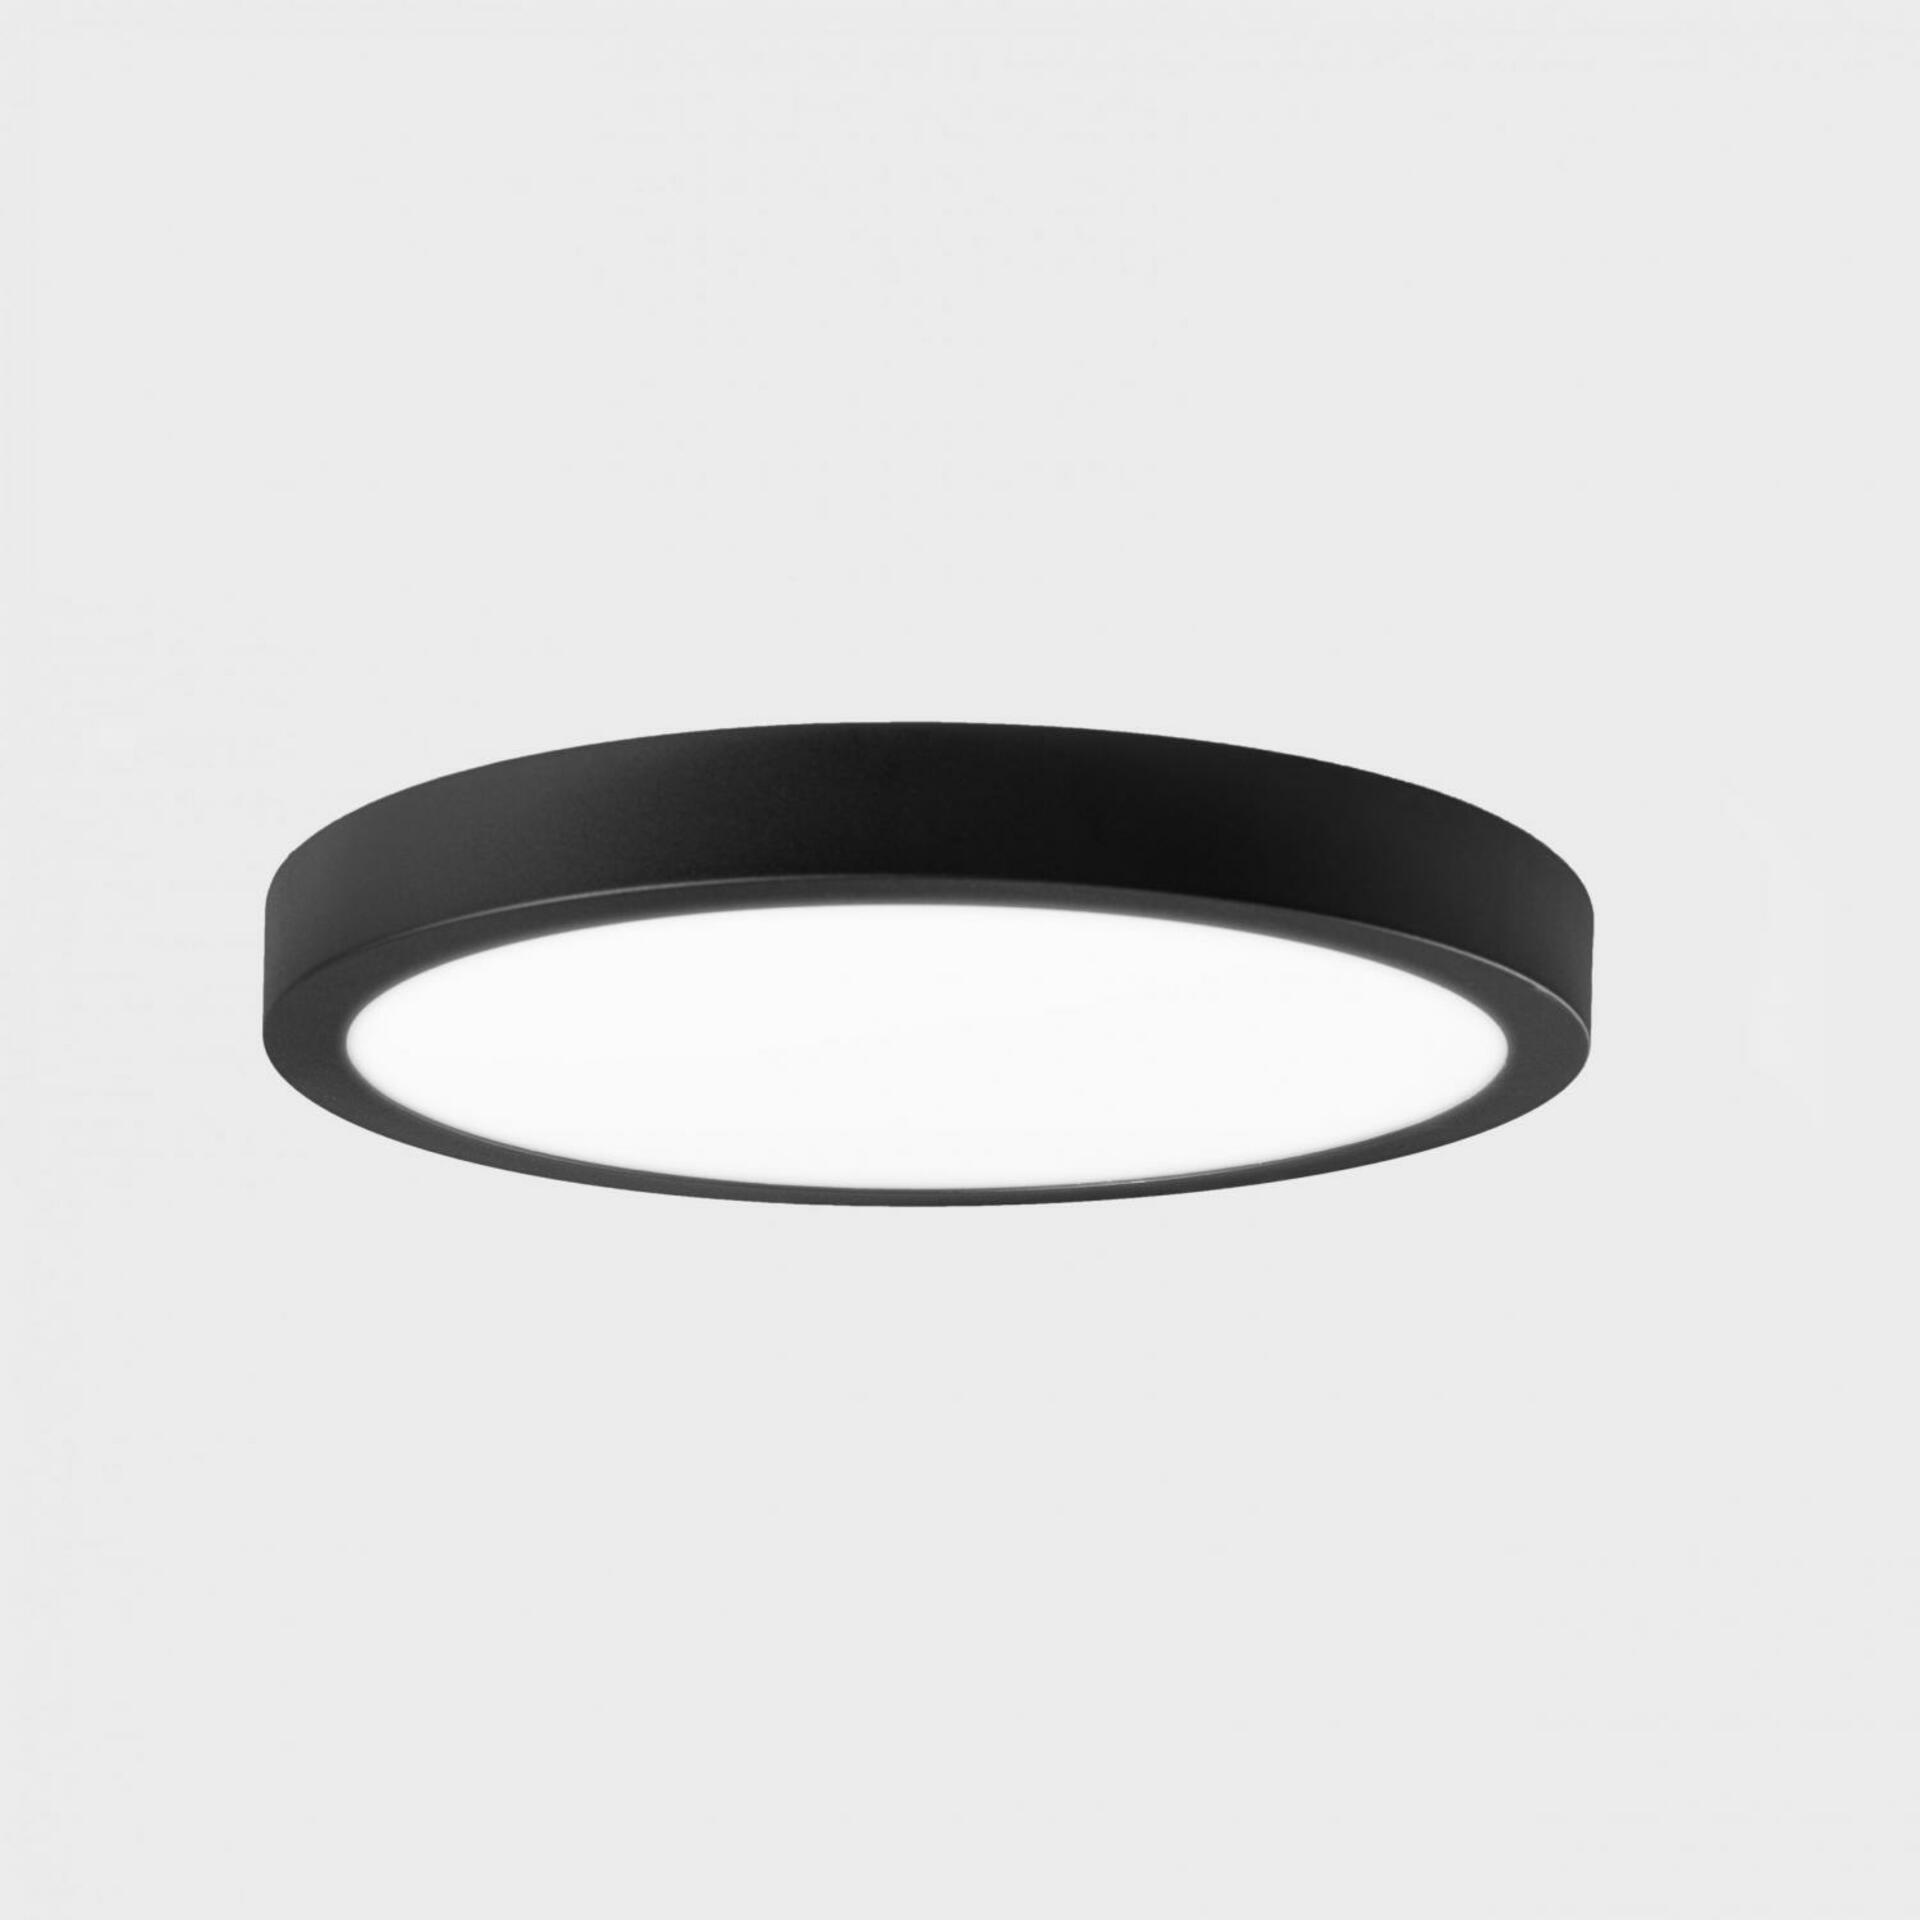 KOHL LIGHTING KOHL-Lighting DISC SLIM stropní svítidlo pr. 500 mm černá 48 W CRI 80 4000K Non-Dimm